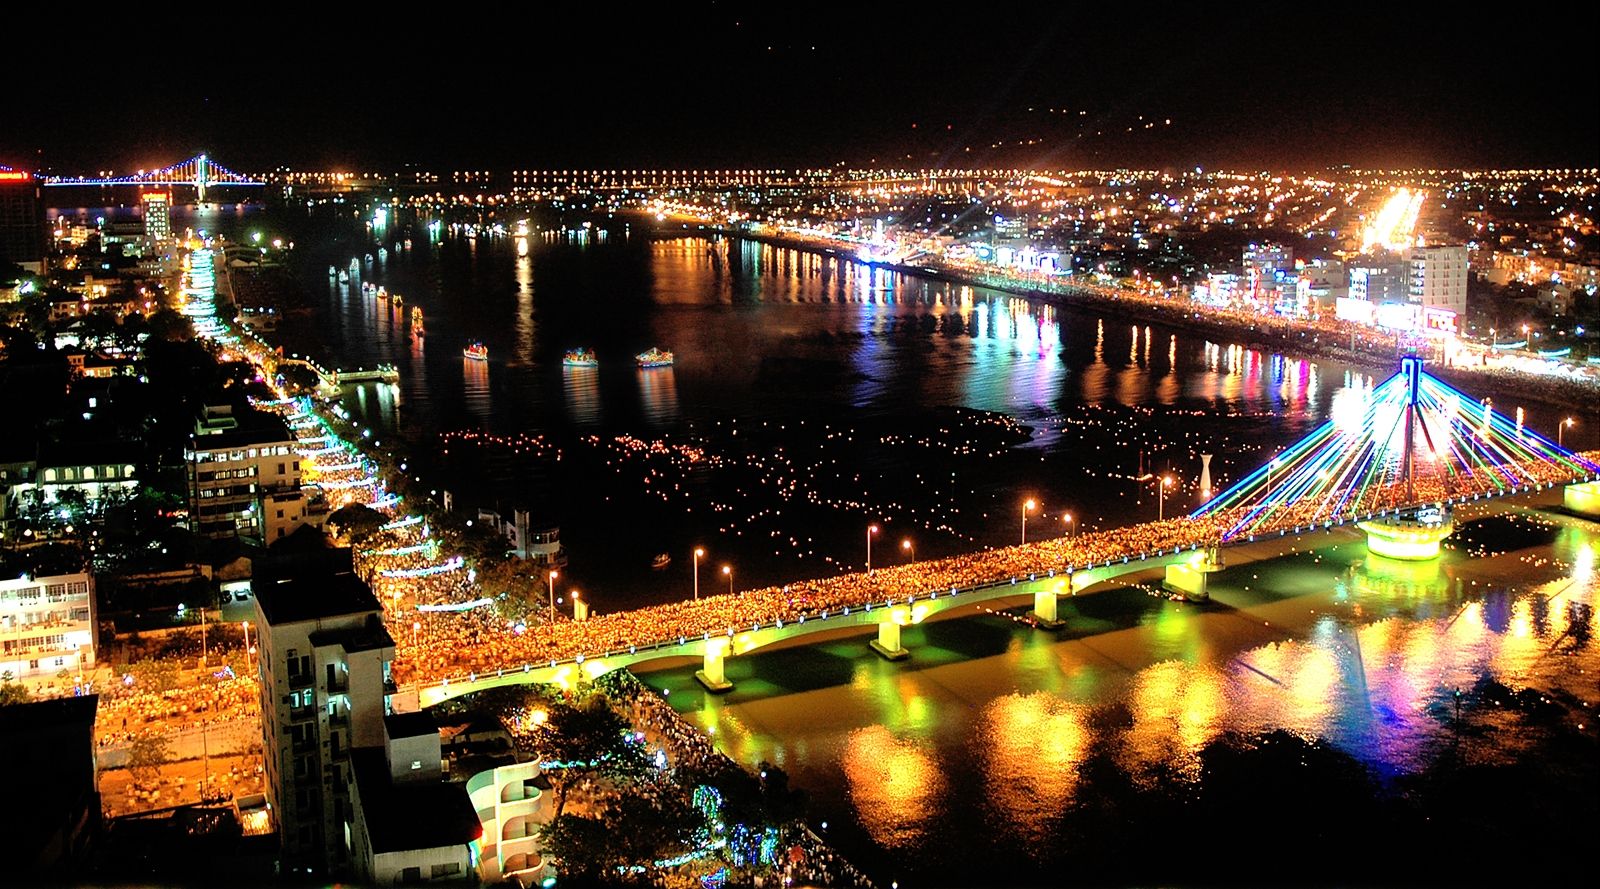 Bạn yêu thích nét đẹp của đêm tối và đang tìm kiếm những thành phố đẹp nhất để explore? Với danh sách Top 10 thành phố đẹp nhất về đêm của Việt Nam, bạn sẽ không thể bỏ qua cơ hội trải nghiệm và khám phá những điều thú vị trong cuộc sống đêm của các thành phố này!